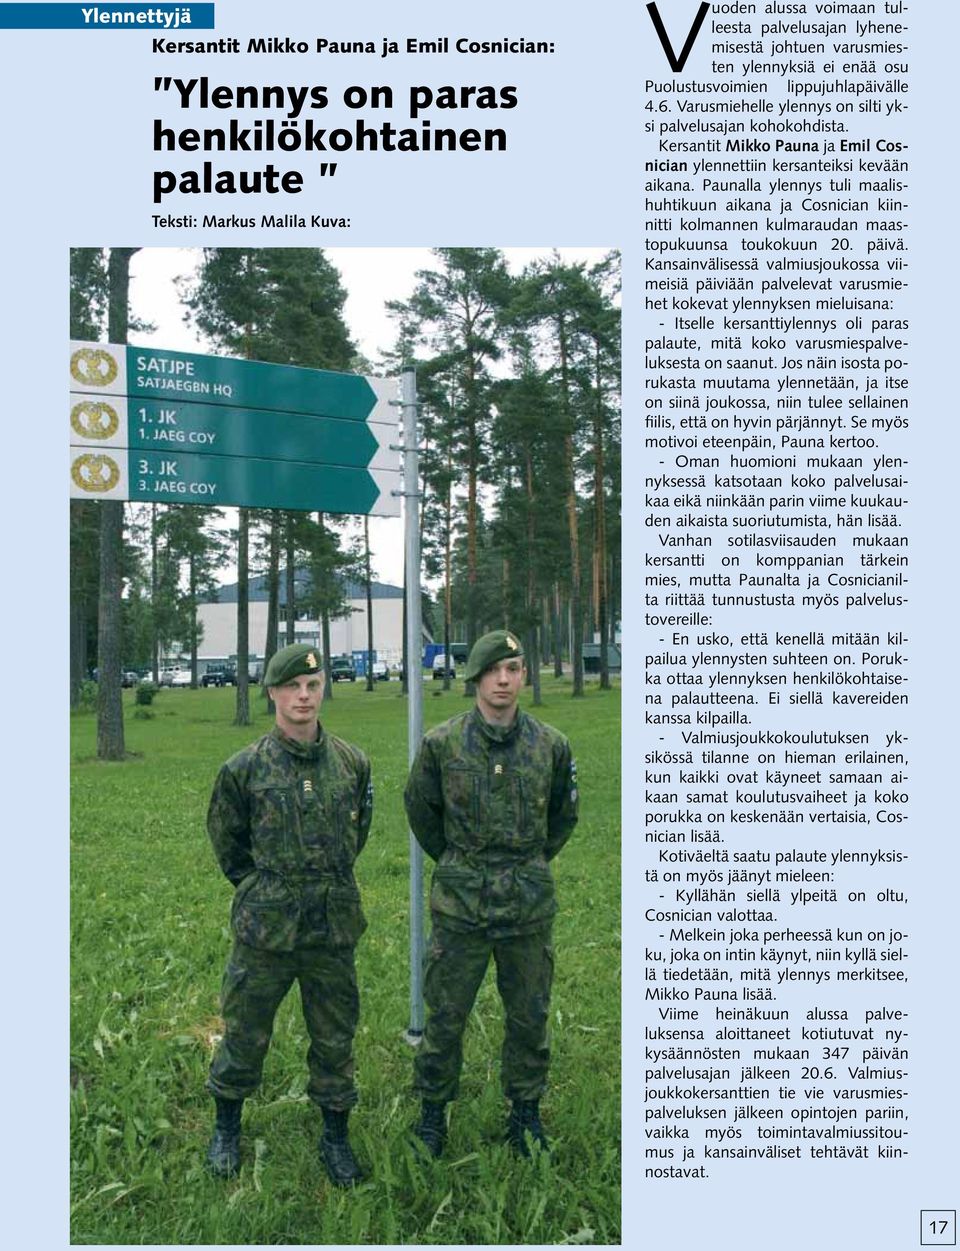 Kersantit Mikko Pauna ja Emil Cosnician ylennettiin kersanteiksi kevään aikana. Paunalla ylennys tuli maalishuhtikuun aikana ja Cosnician kiinnitti kolmannen kulmaraudan maastopukuunsa toukokuun 20.